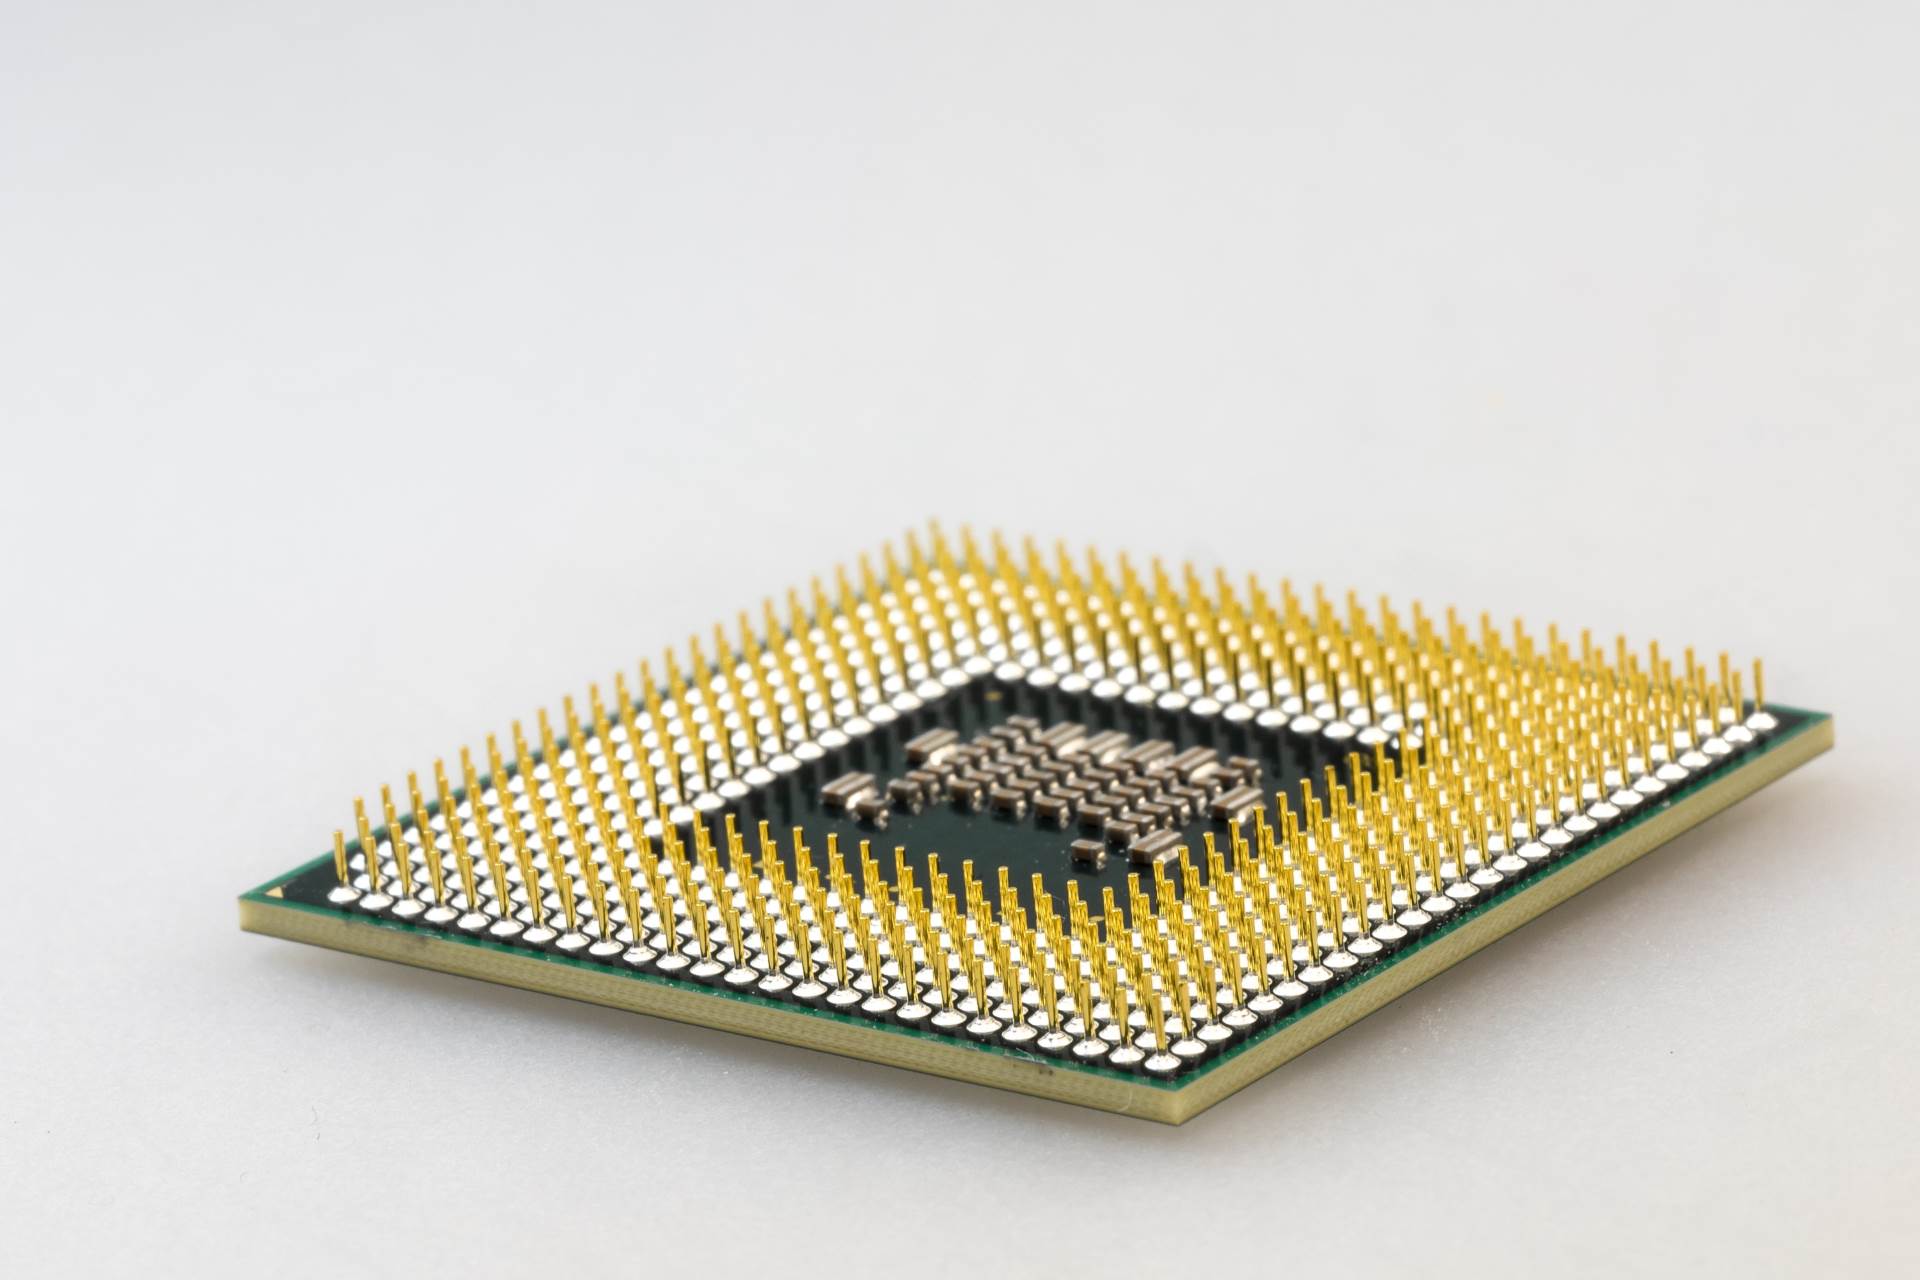  AMD procesor sa čipovima 